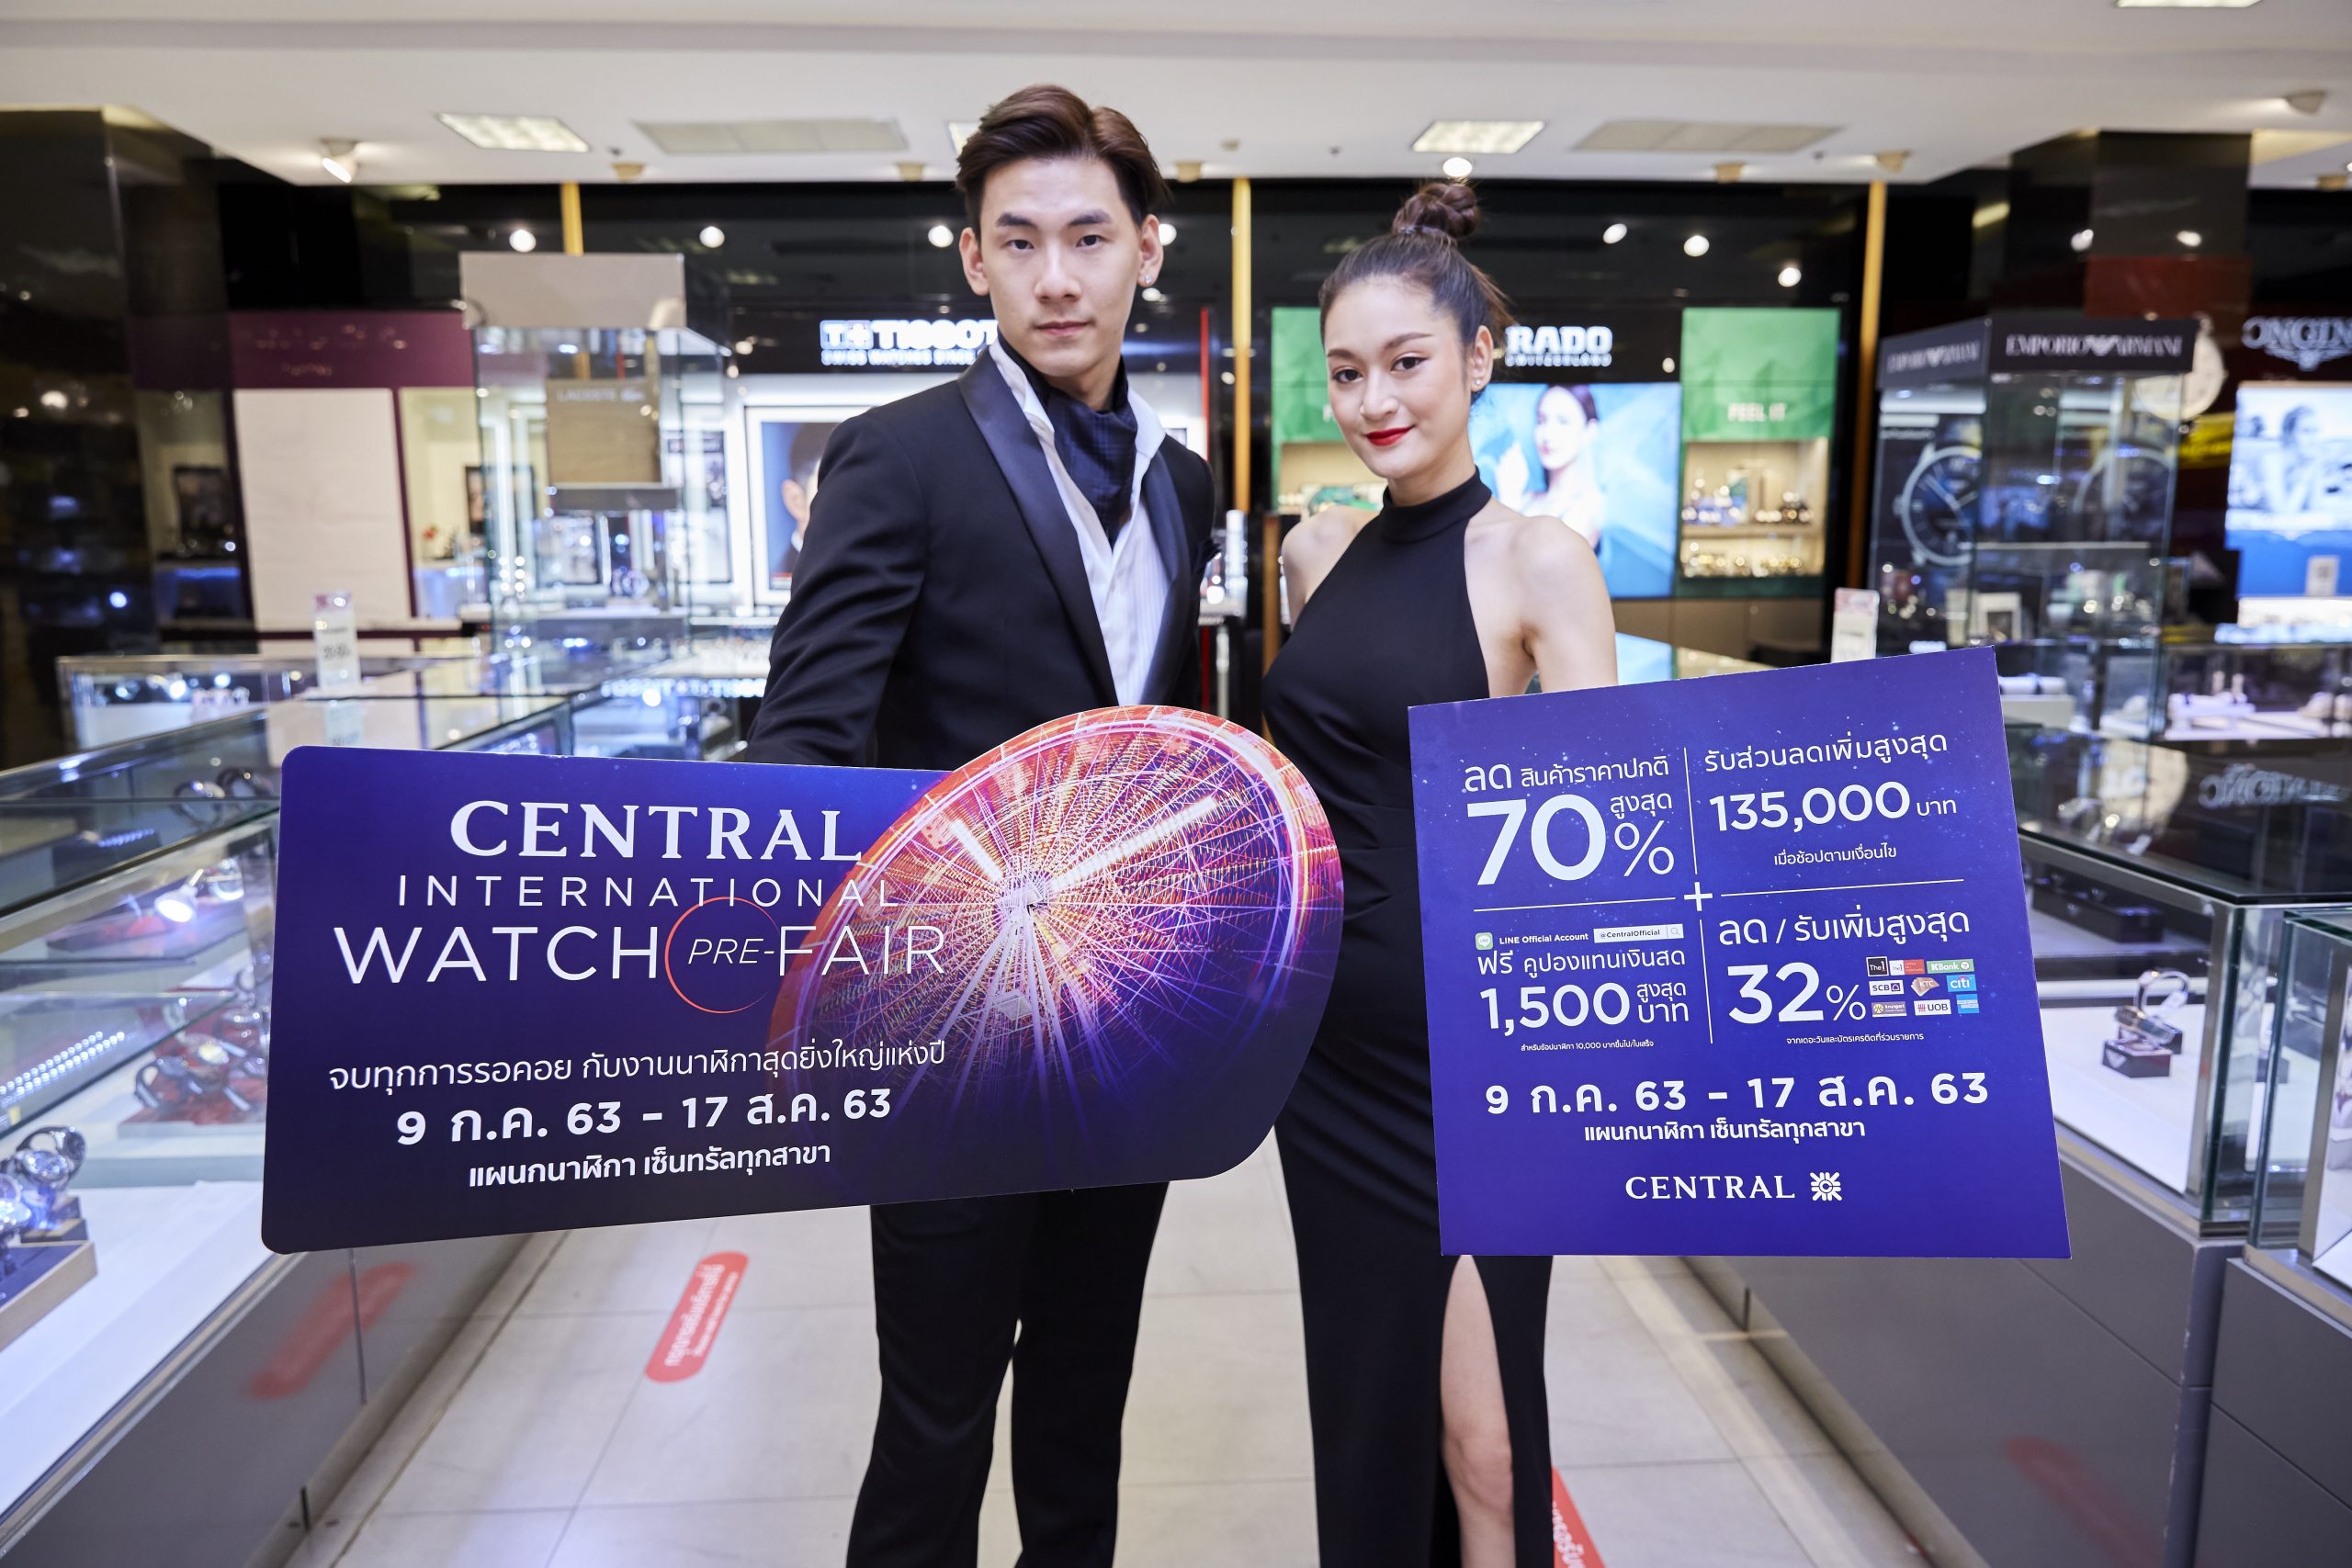 ห้างเซ็นทรัล มอบโปรฯ Central International Watch PRE-Fair 2020 ตอบโจทย์วอทช์เลิฟเวอร์! ลดสูงสุด 70 %